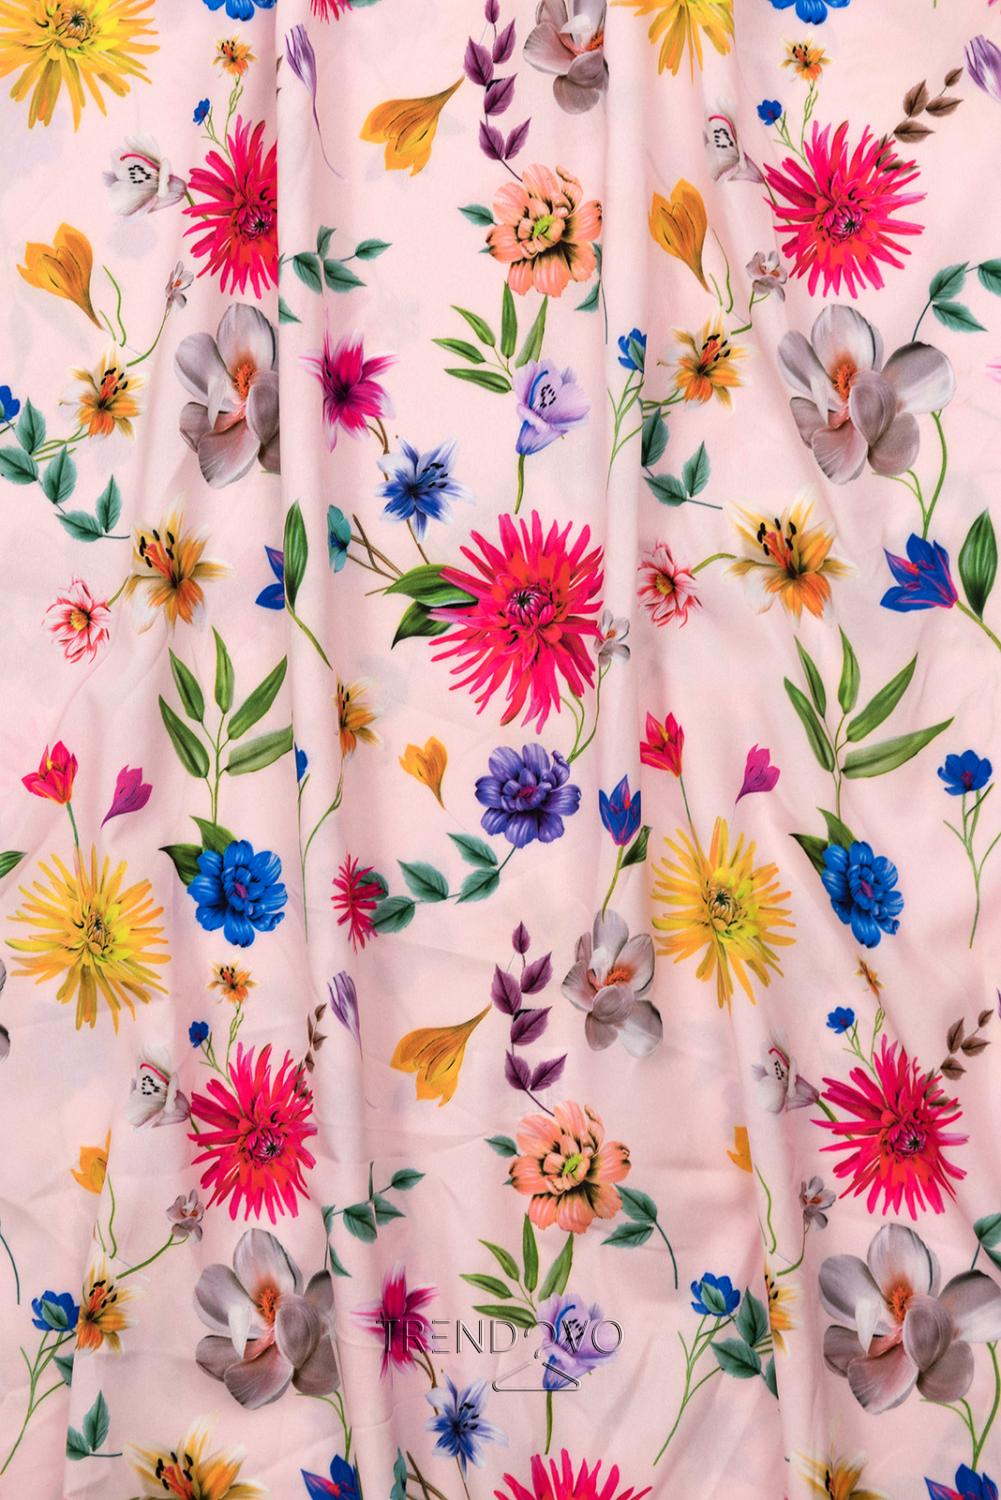 Pudrové maxi květinové barevné šaty